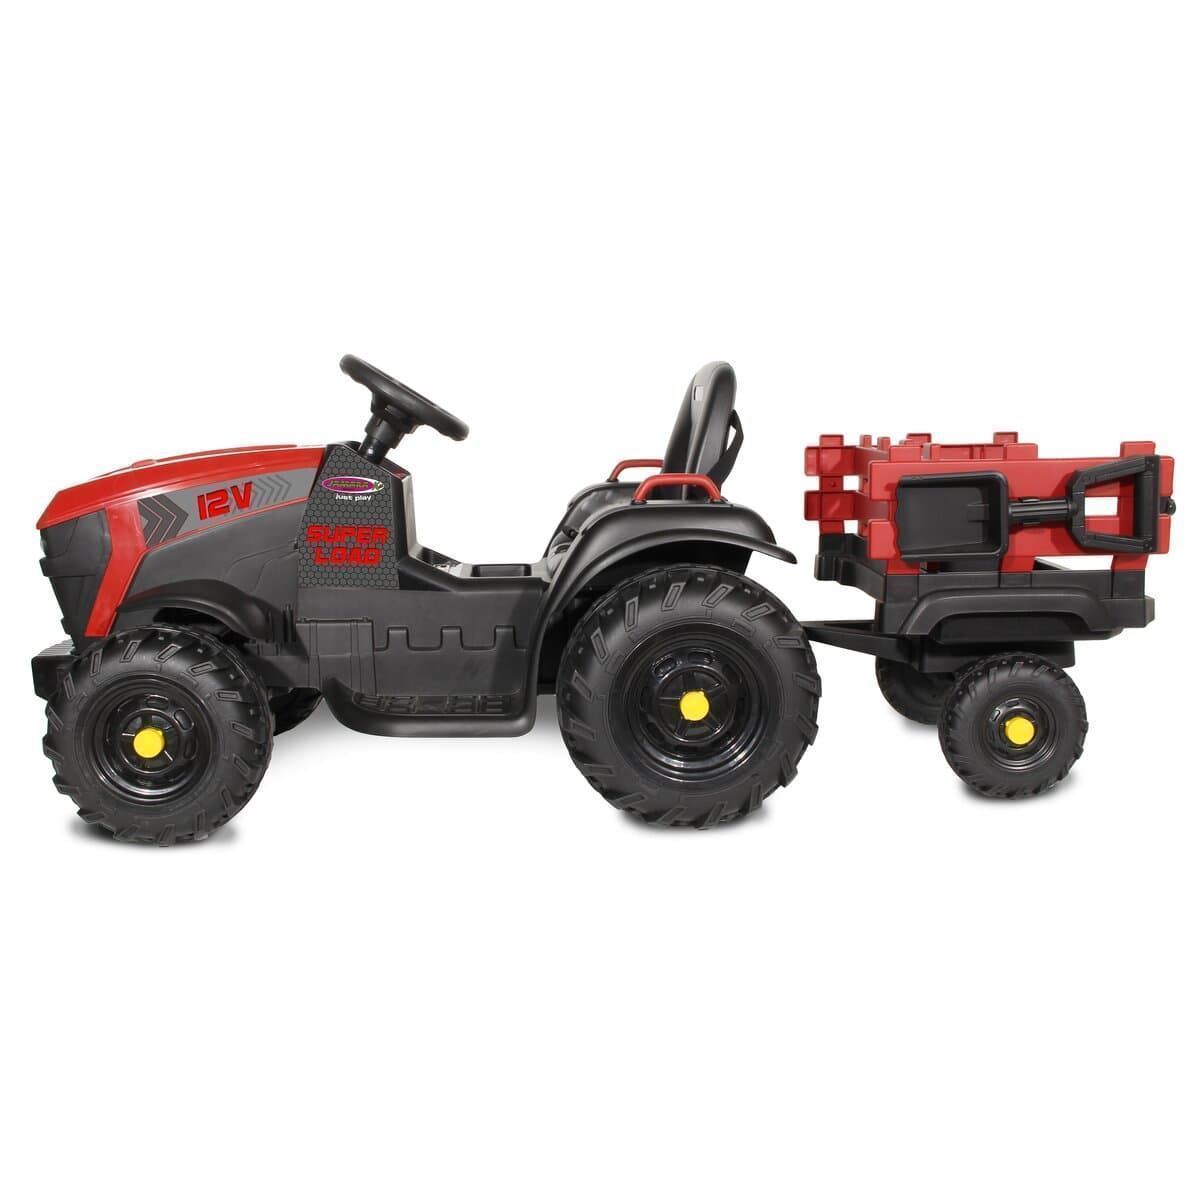 Tractor de batería 12v con remolque rojo jamara 460895 - Imagen 7